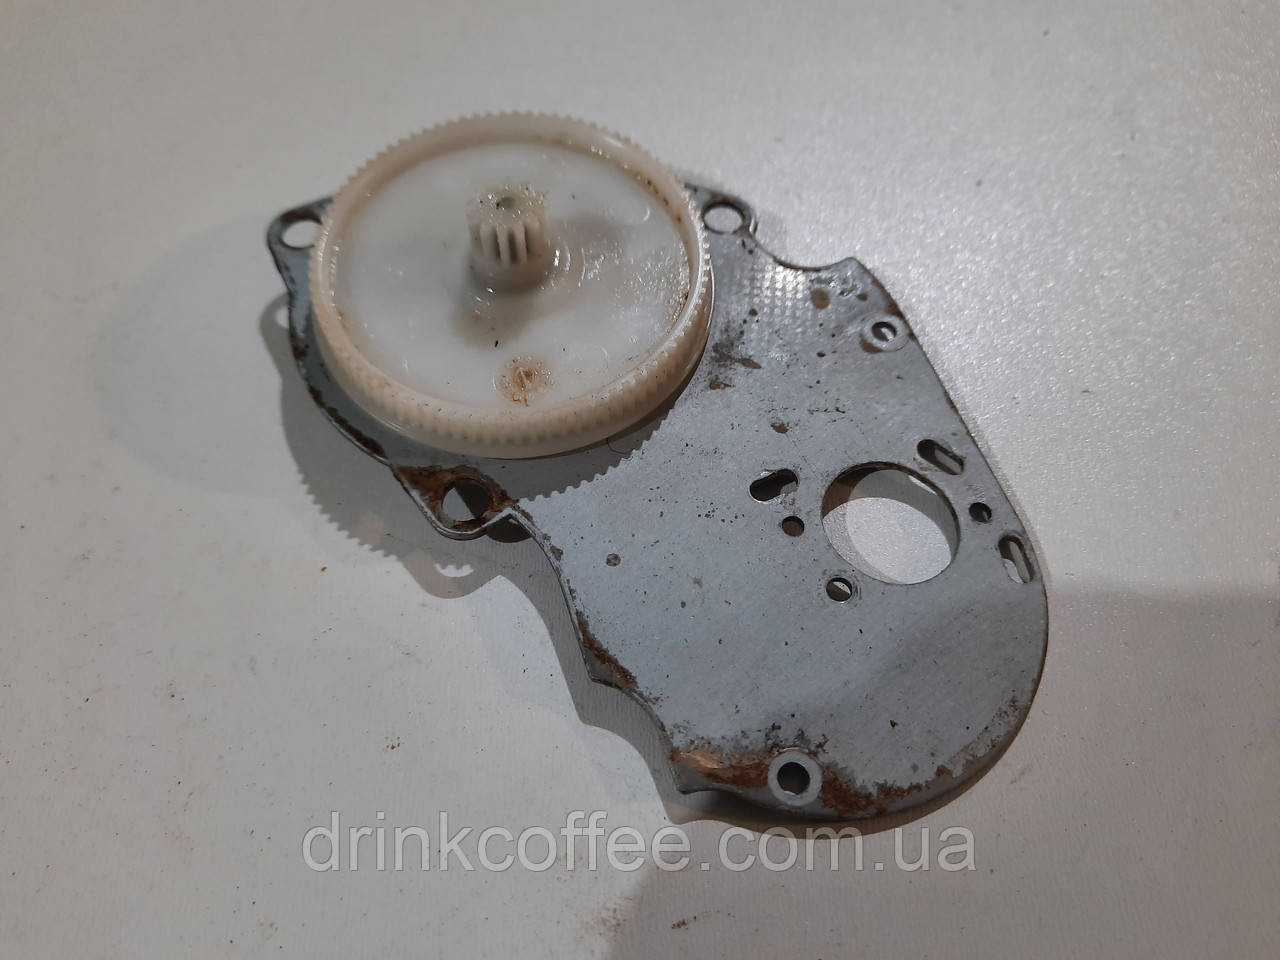 Шестерня с гайкой и площадкой двигателя кофемолки для кофемашины Delonghi Delonghi ESAM 6600 PrimaDonna б/у